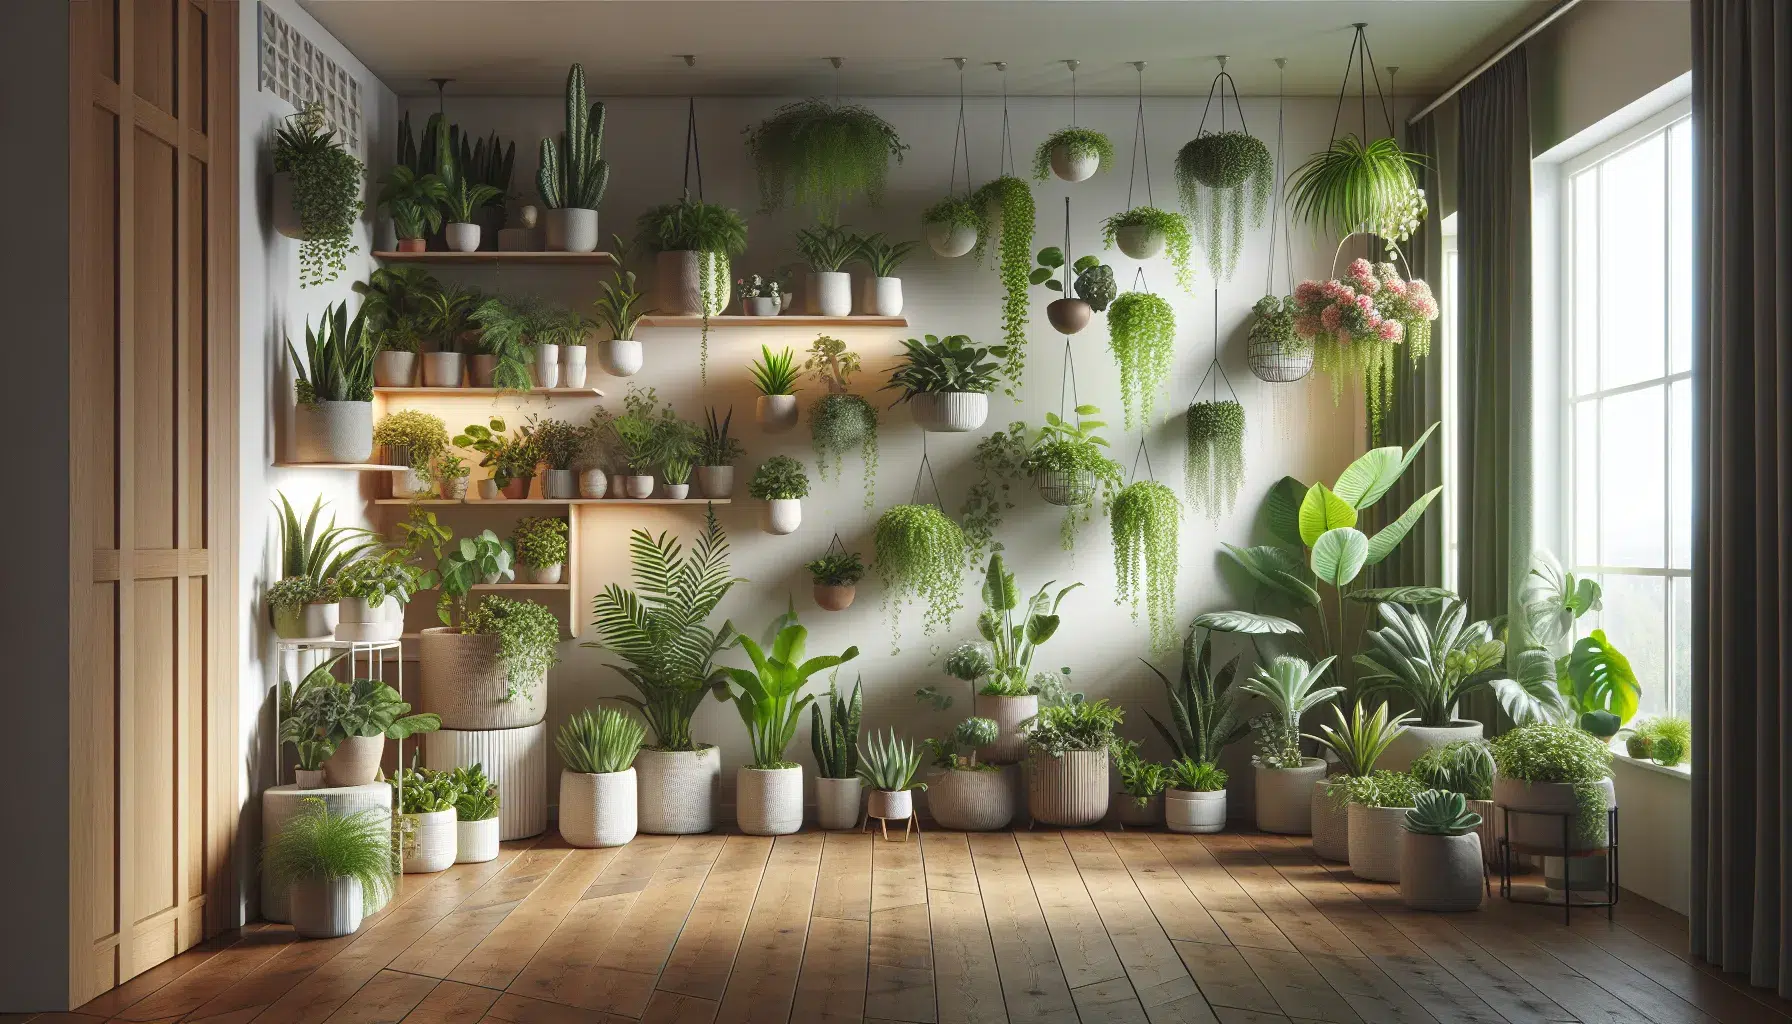 Plantas de interior perfectas para decorar espacios reducidos.